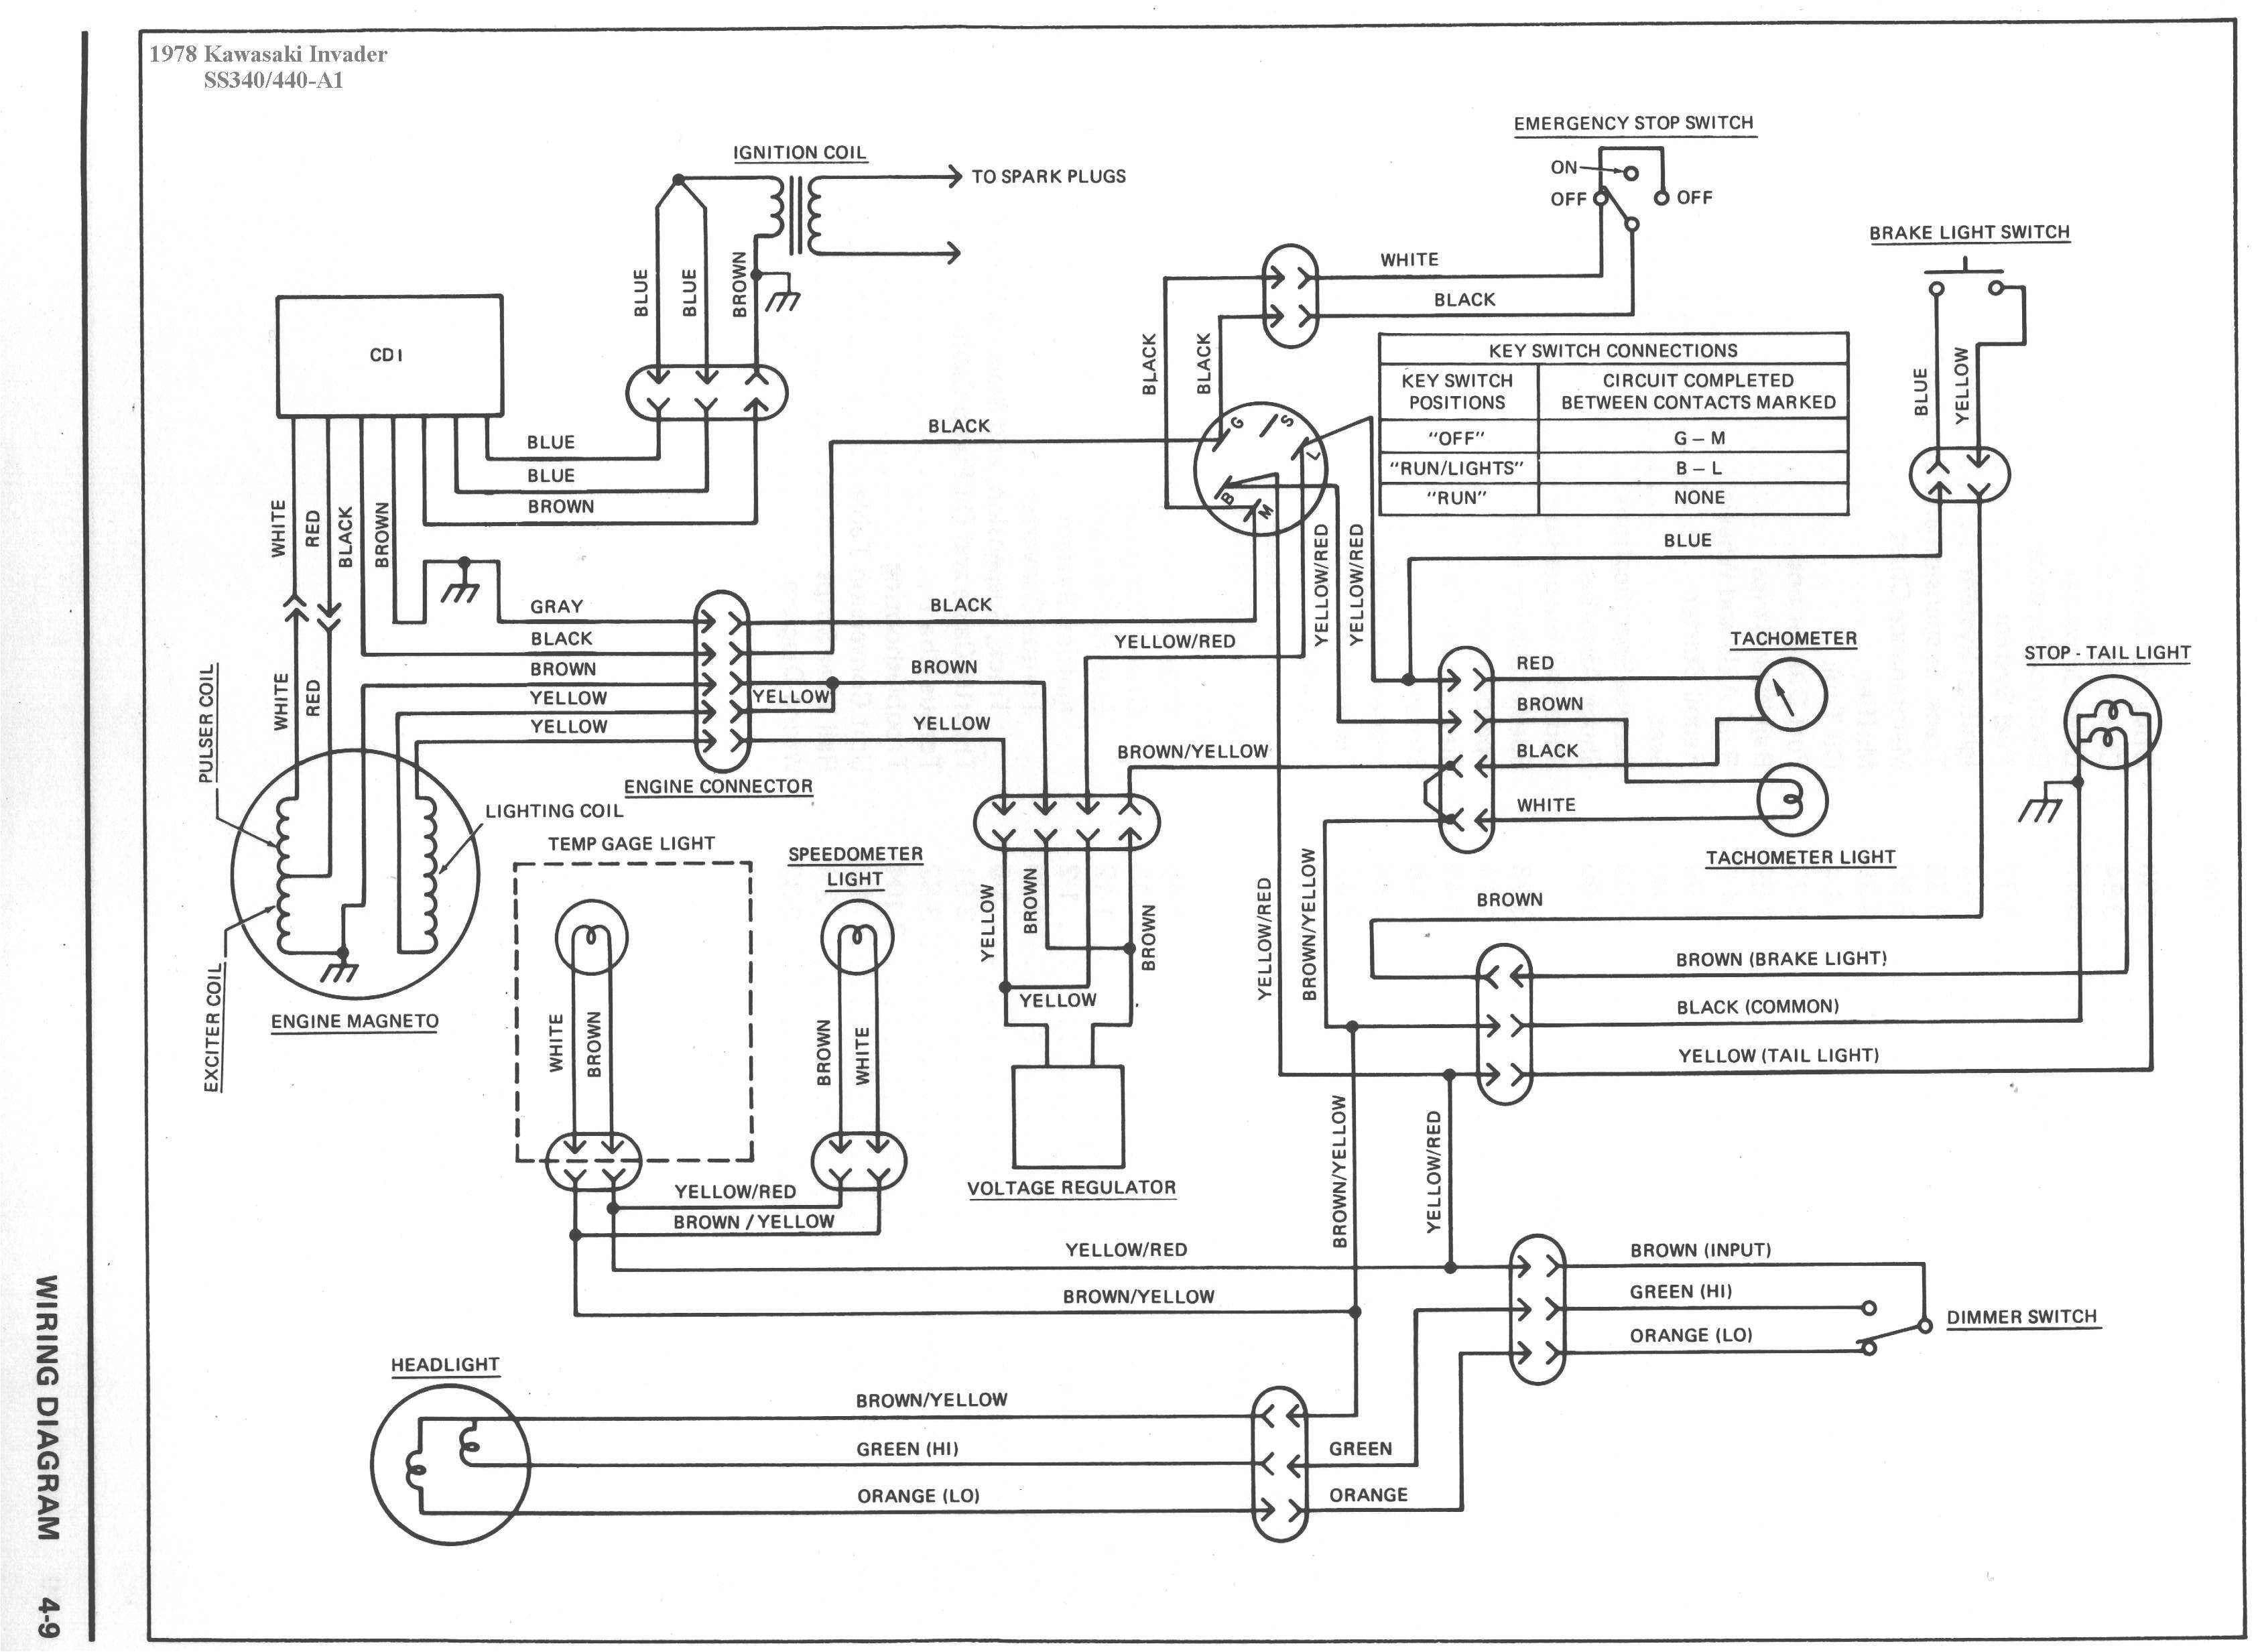 wiring diagram for kawasaki bayou 220 refrence bayou 220 wiring diagram wiring diagram of wiring diagram for kawasaki bayou 220 with kawasaki bayou 220 wiring diagram png